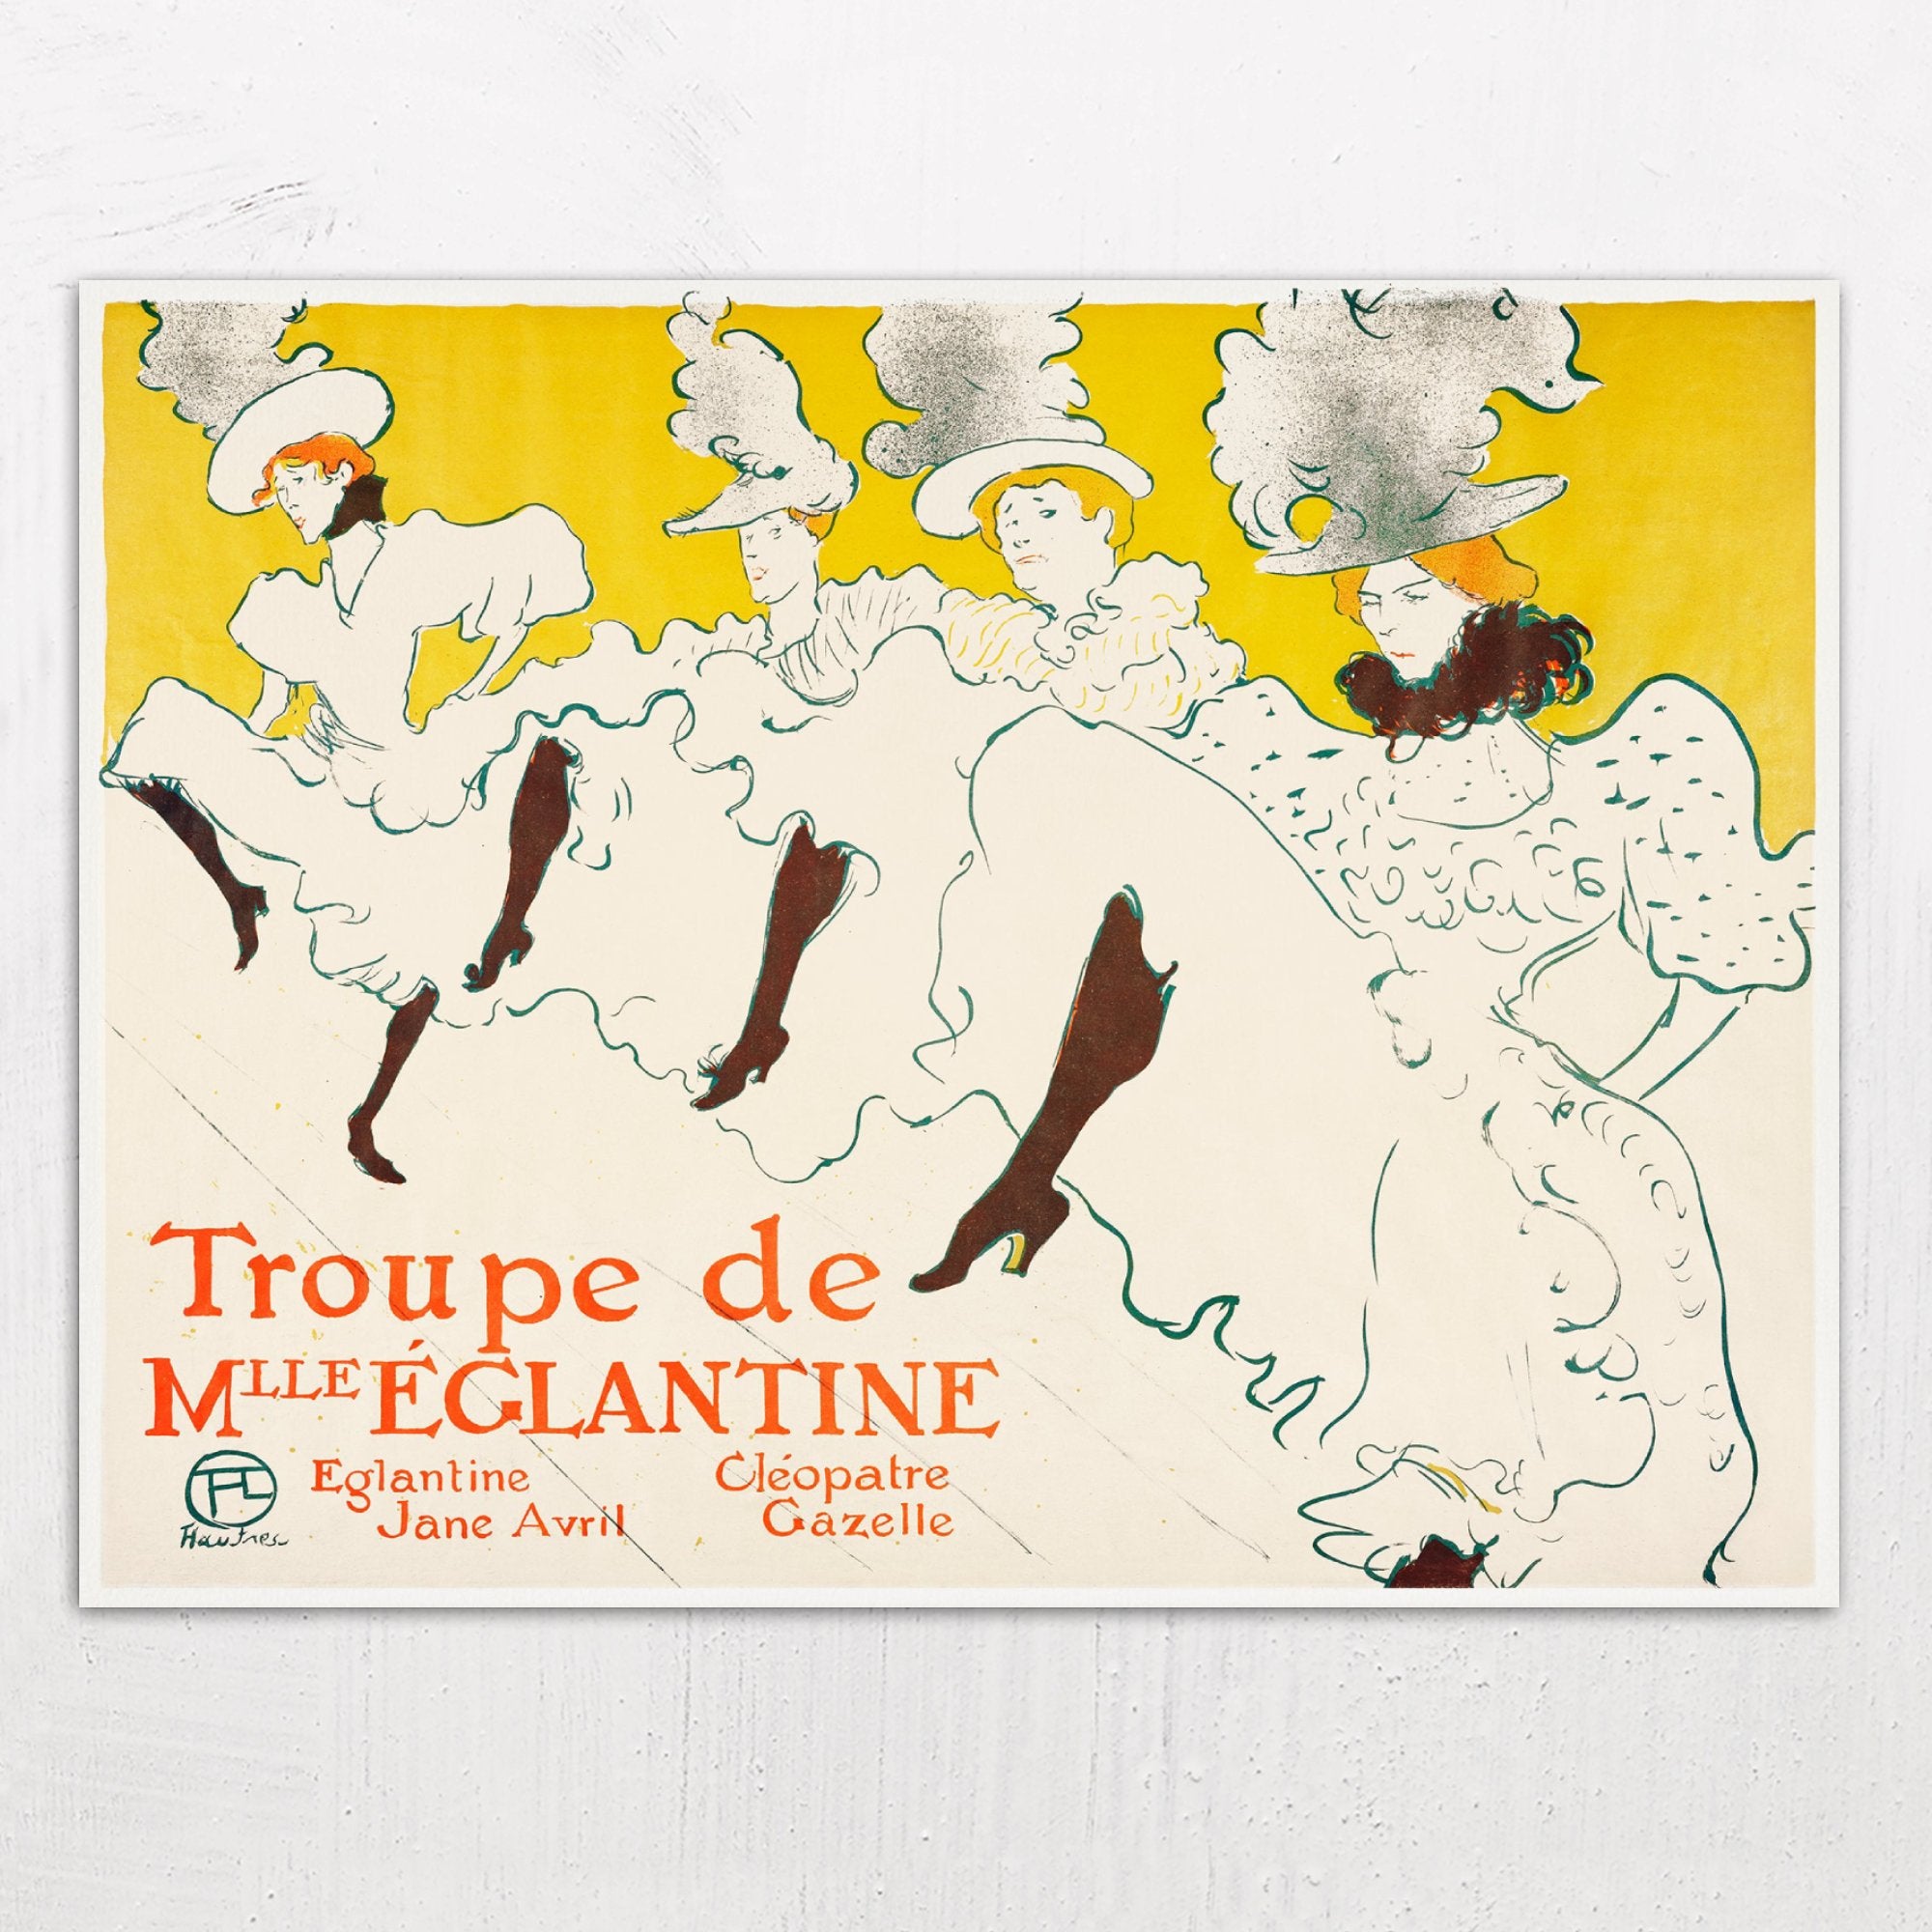 Mademoiselle Eglantine’s Troupe by Henri de Toulouse-Lautrec (1896)